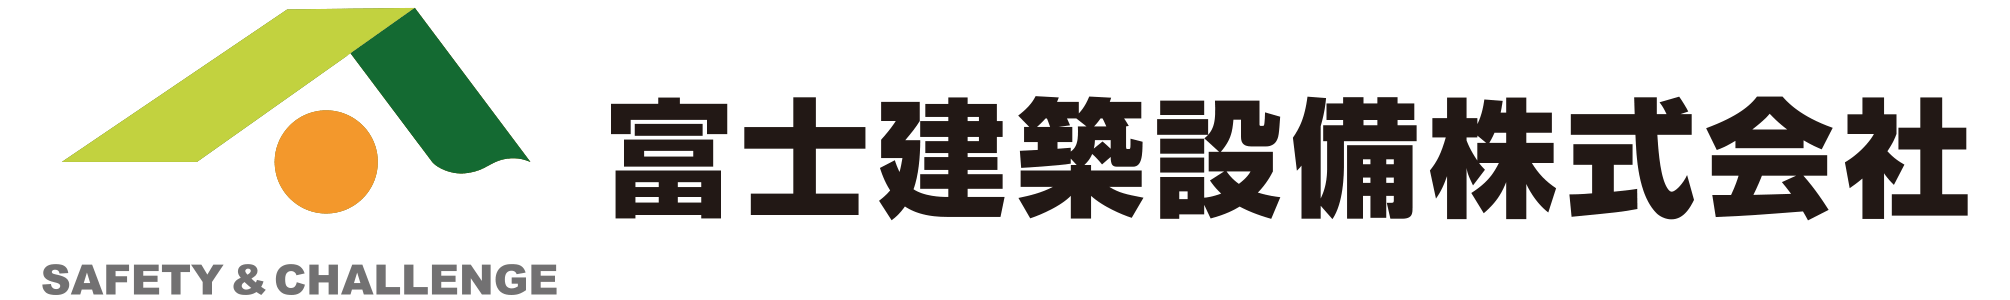 富士建築設備株式会社ロゴ